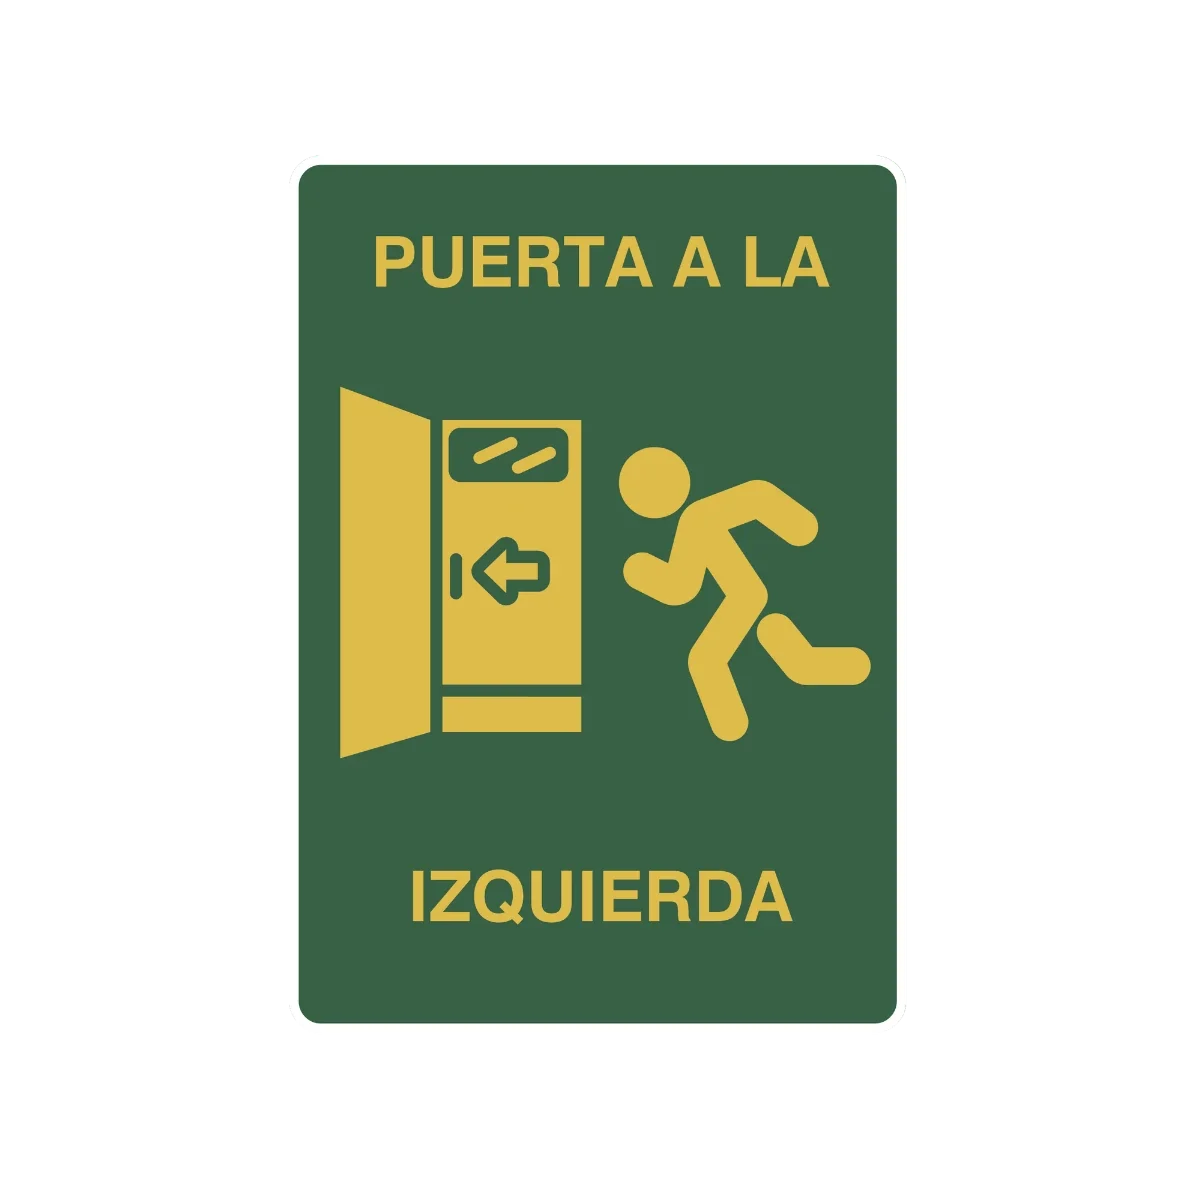 La señal Izquierda a puerta proporciona información detalla hacia la ruta de evacuación